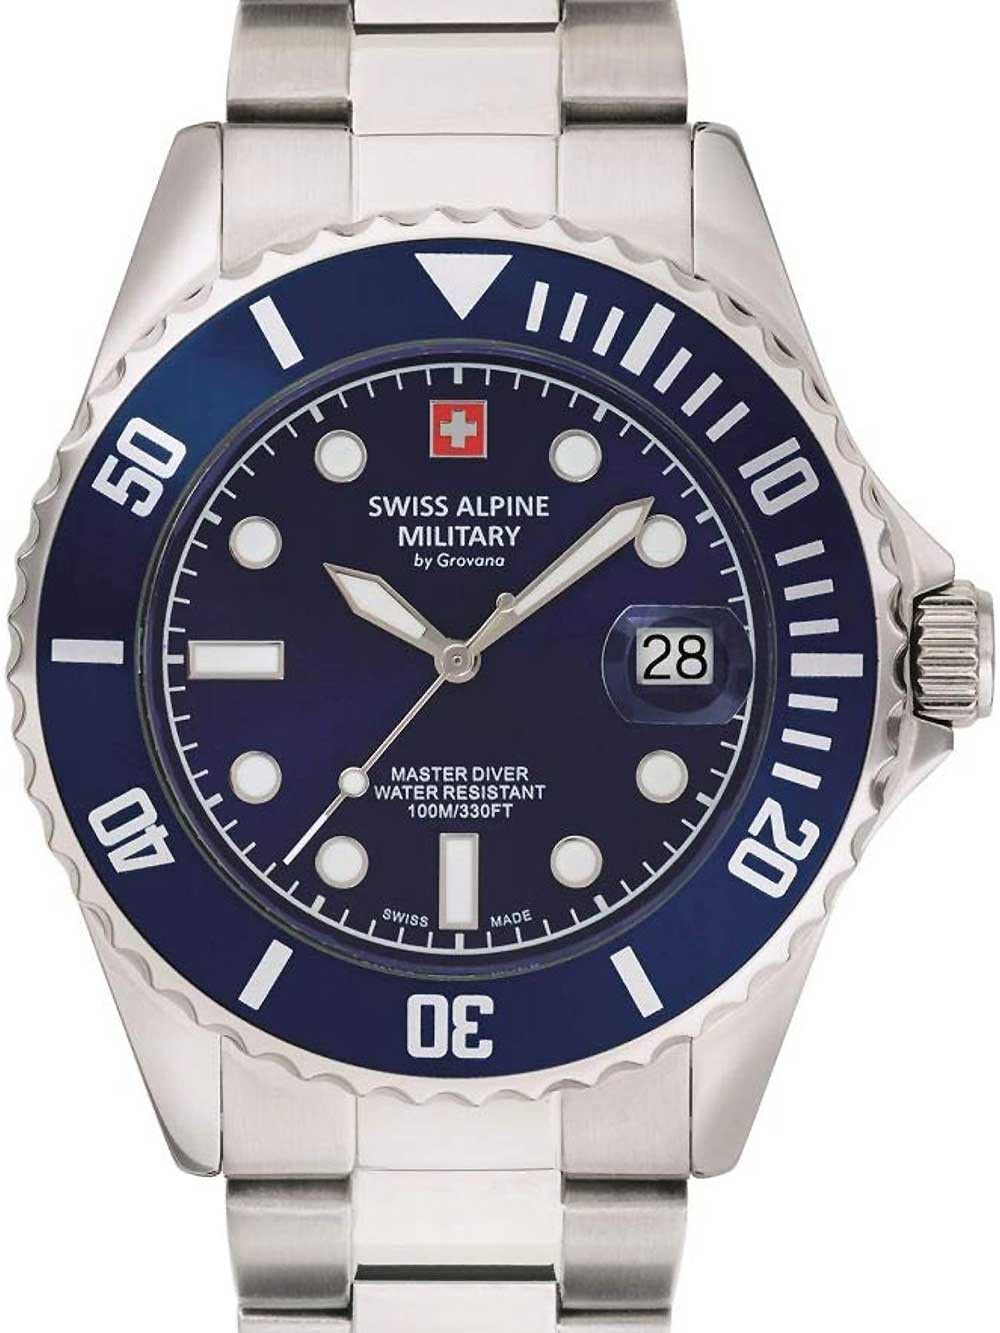 Мужские наручные часы с серебряным браслетом Swiss Alpine Military 7053.1135 diver 42mm 10ATM